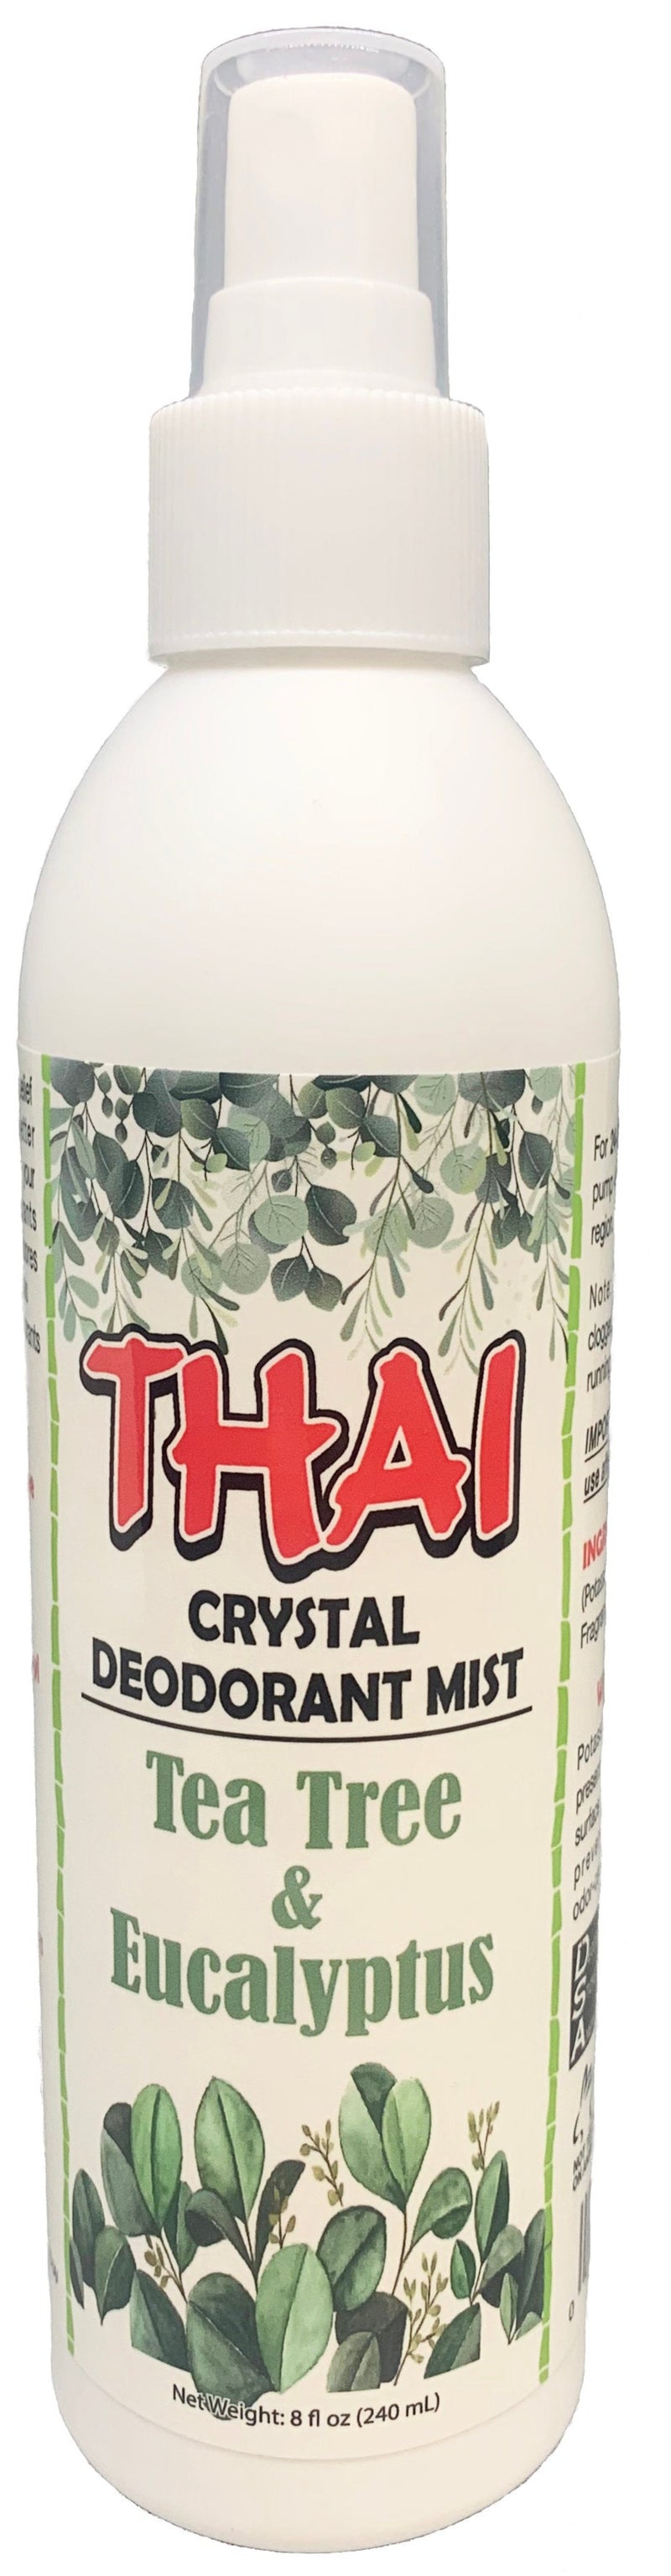 Thai Crystal Mist Tea Tree & Eucalyptus - MeStore